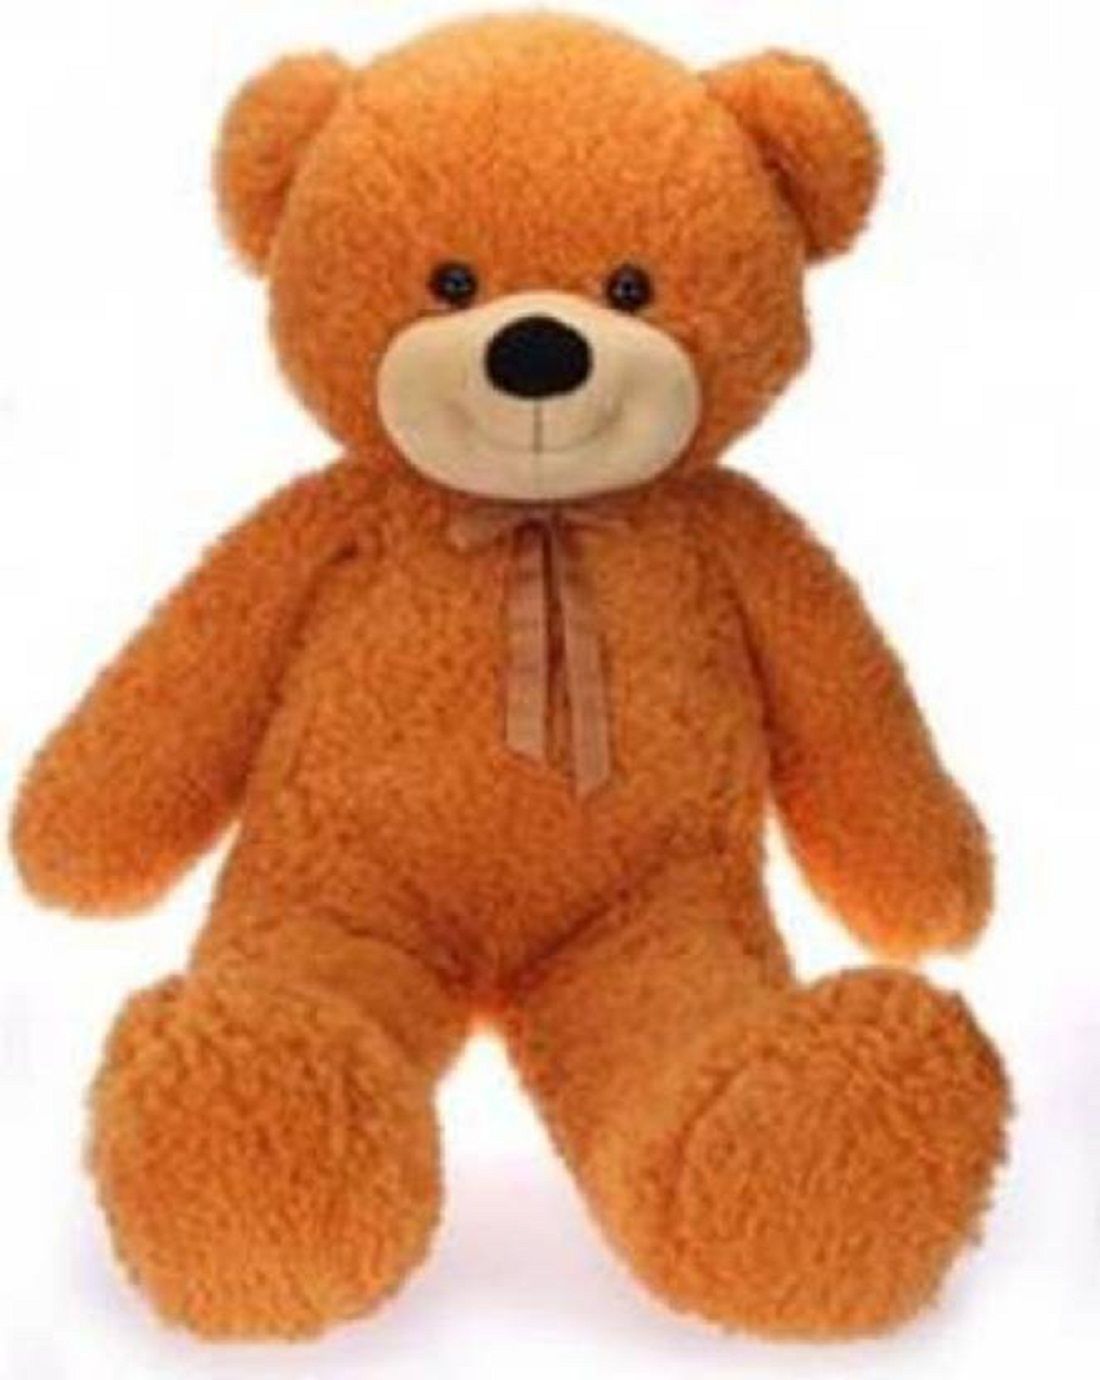 snapdeal 5 feet teddy bear